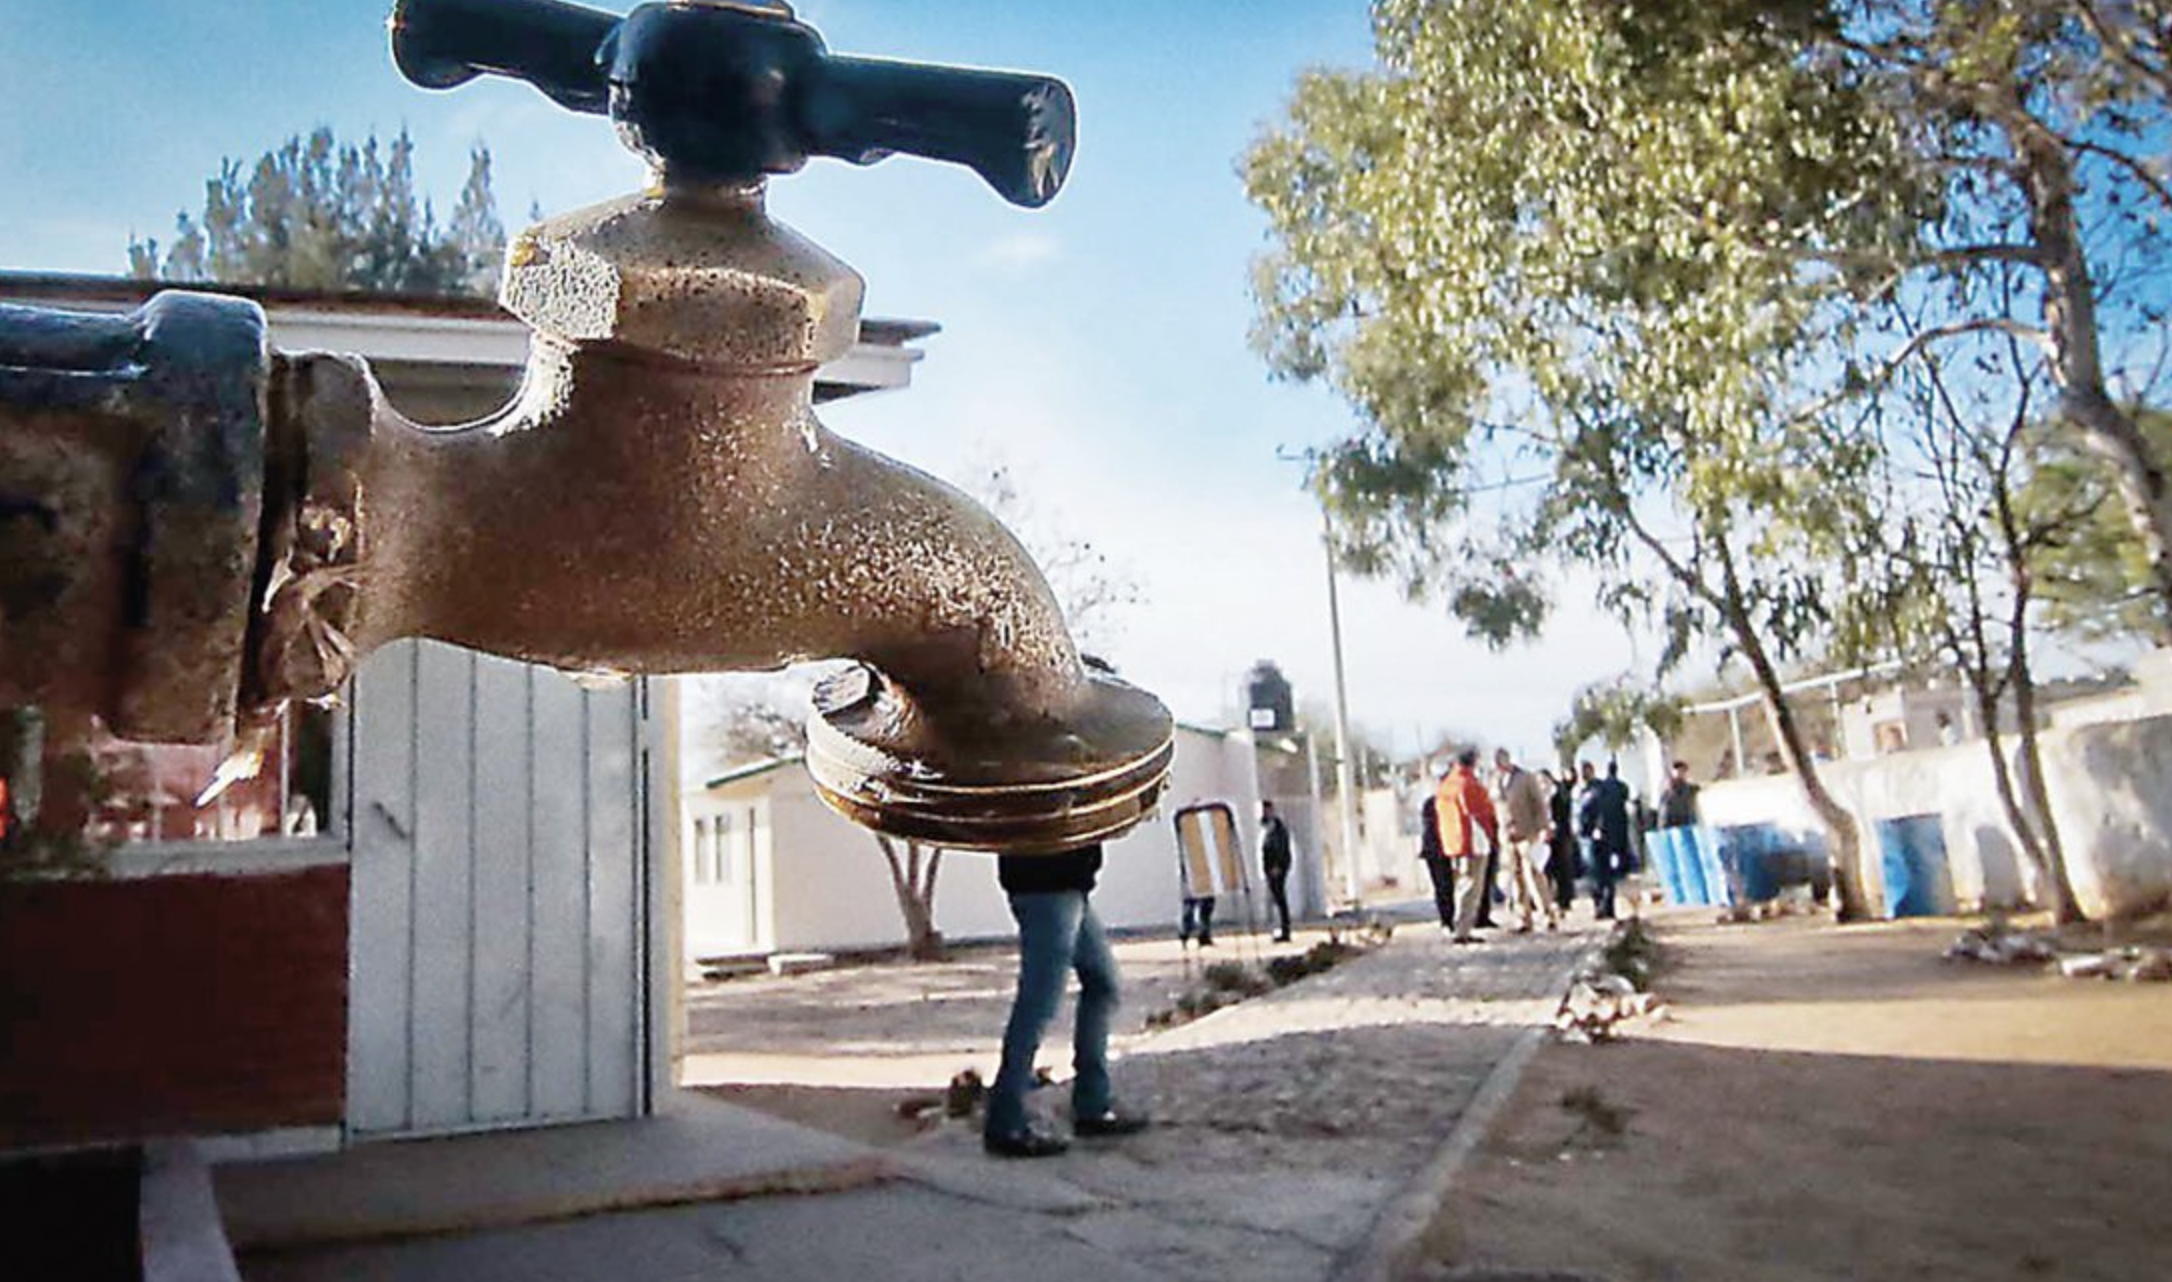 Valle de México- Crisis del agua tendrá impacto sobre la inflación y el nearshoring, advierte IMEF (El Universal)